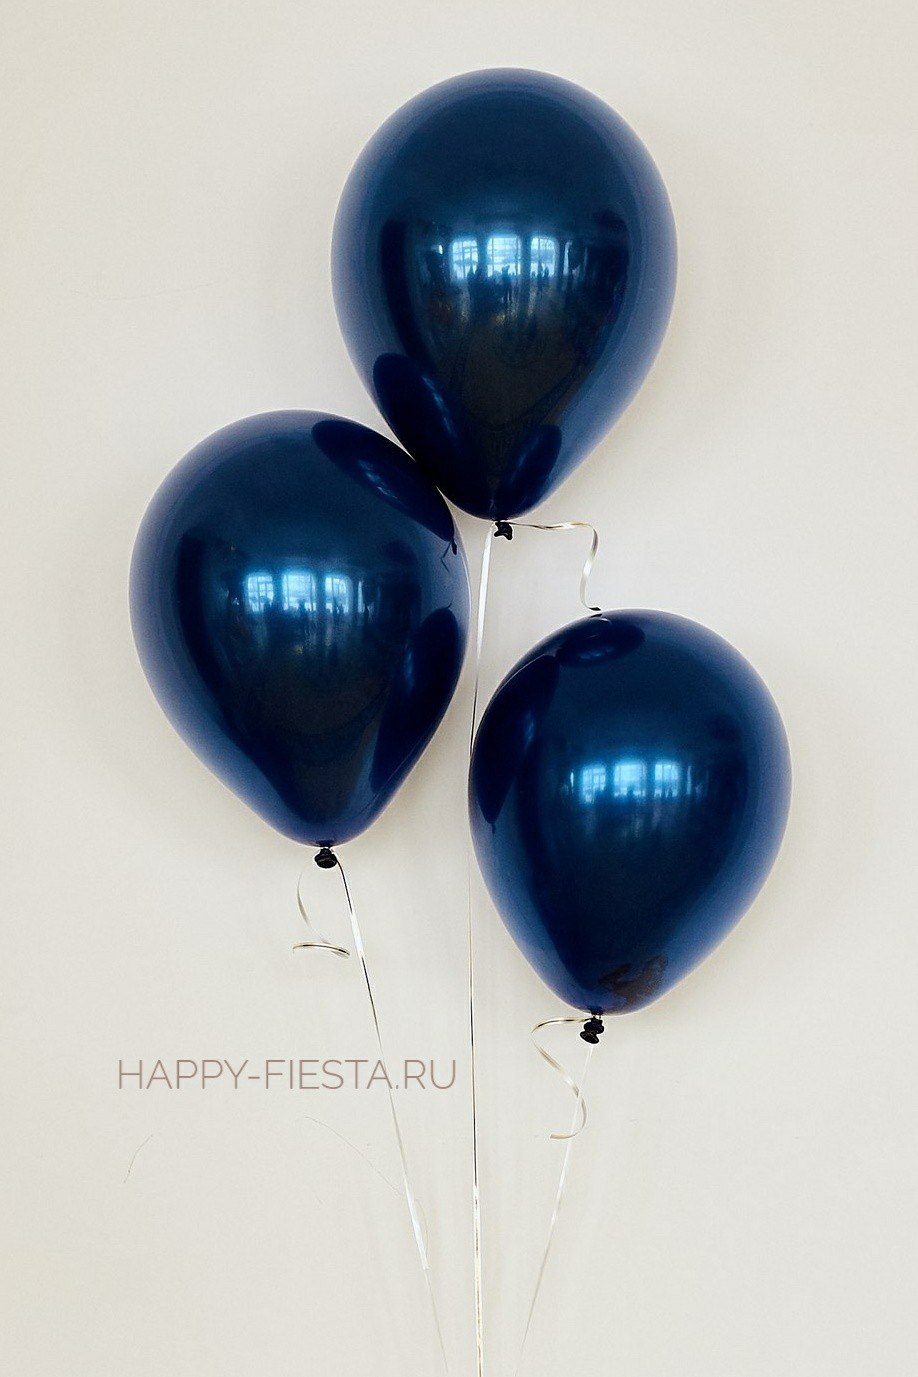 Латексный воздушный шар Indigo (Индиго) купить в магазине товаров для праздника Fiesta с быстрой доставкой по Нижнему Новгороду и области. Гарантия долгого полета! Более 2000 наименований гелиевых шаров!